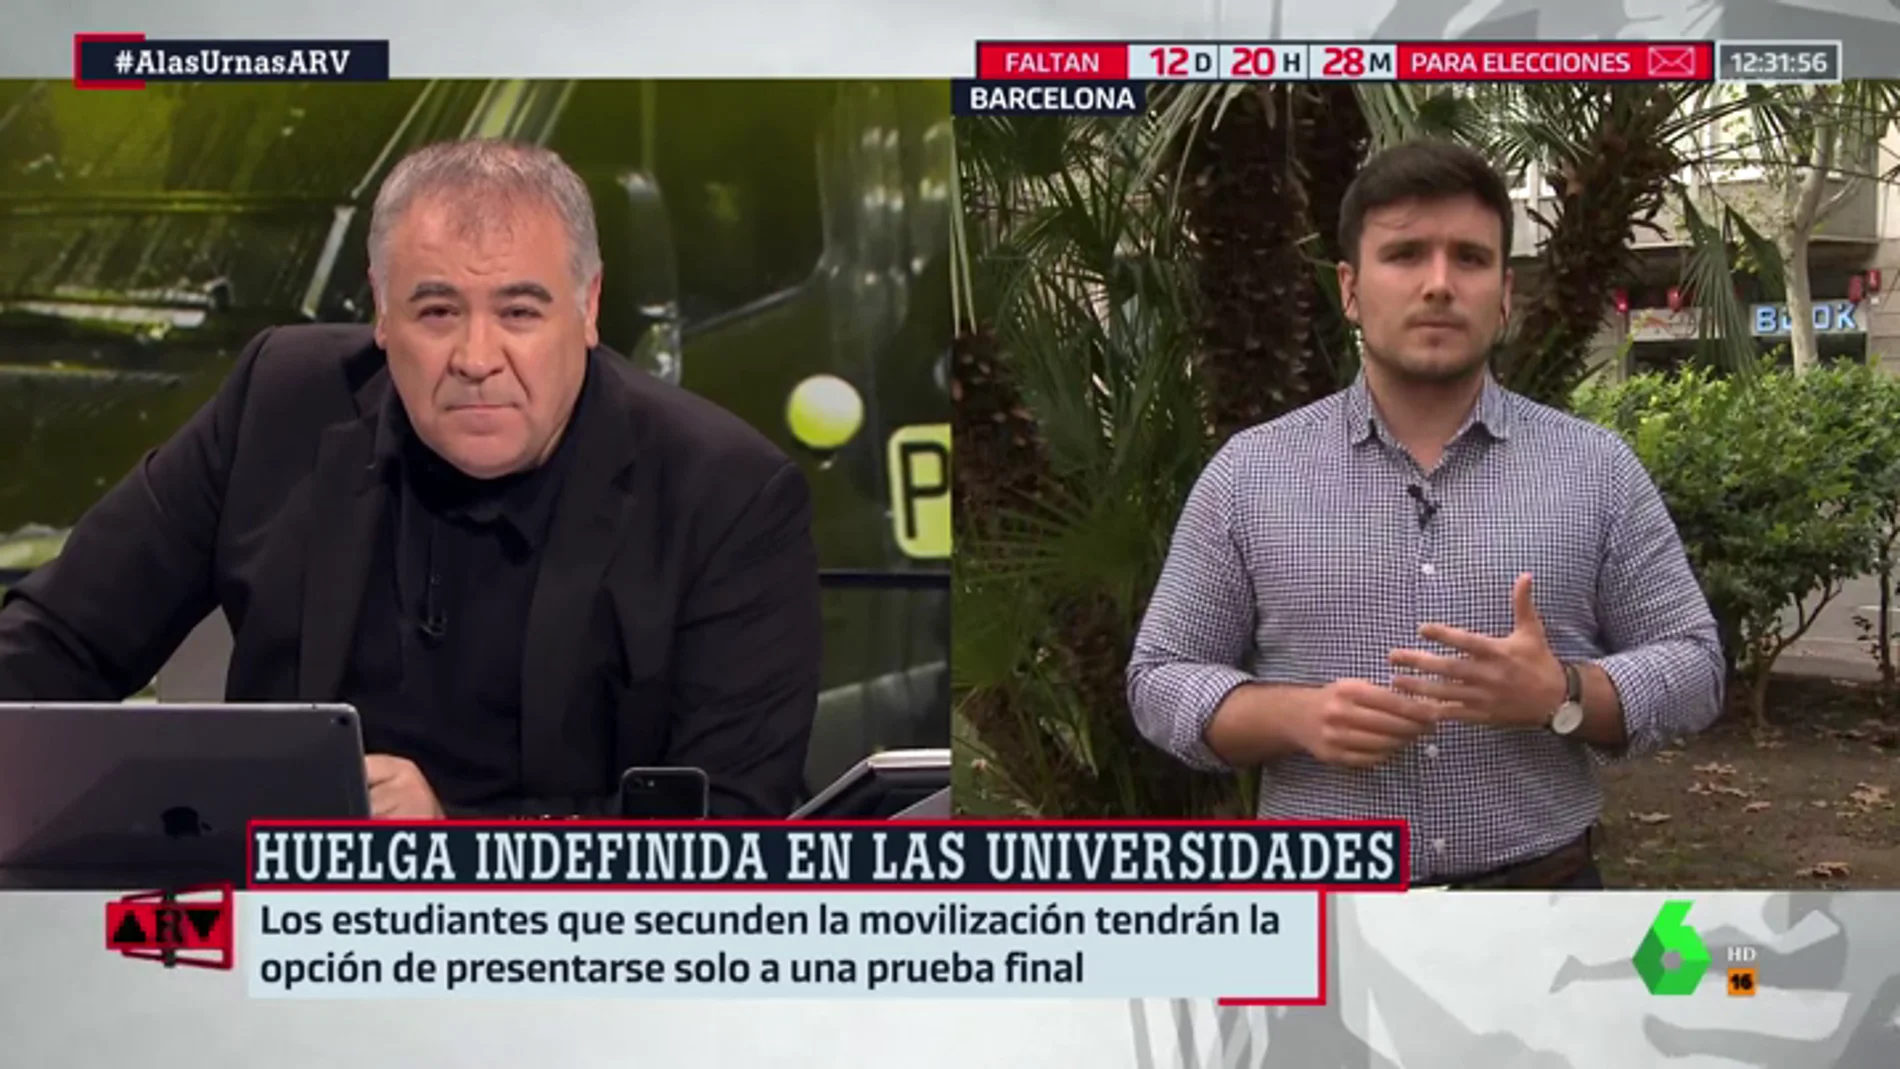 Jordi Salvadó, coordinador de S'ha Acabat: "Los independentistas radicales no respetan el derecho a ir a clase"